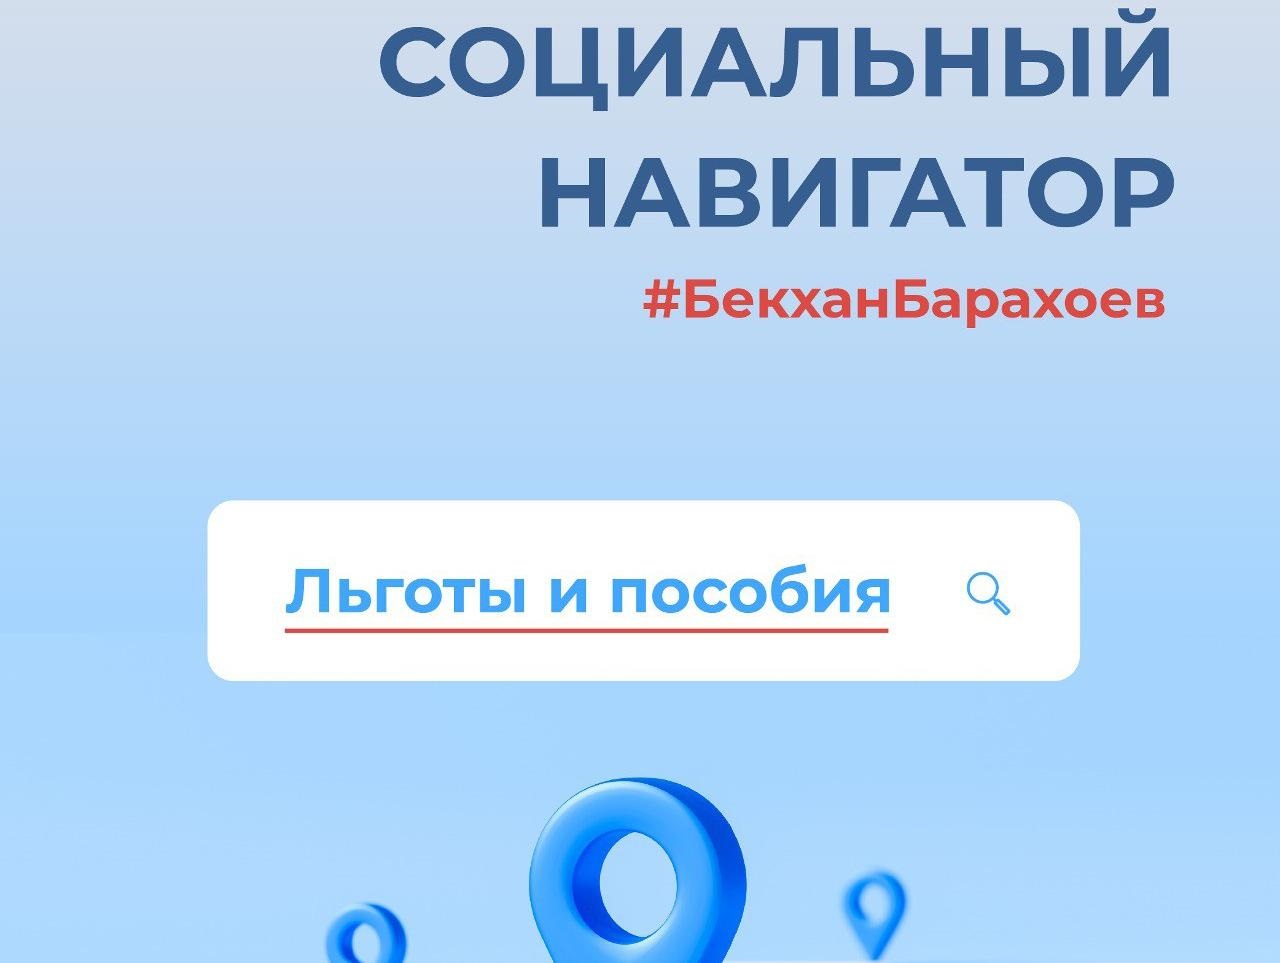 Новости Ингушетии: Социальный навигатор: депутат Госдумы Бекхан Барахоев запустил в соцсетях рубрику о мерах социальной поддержки